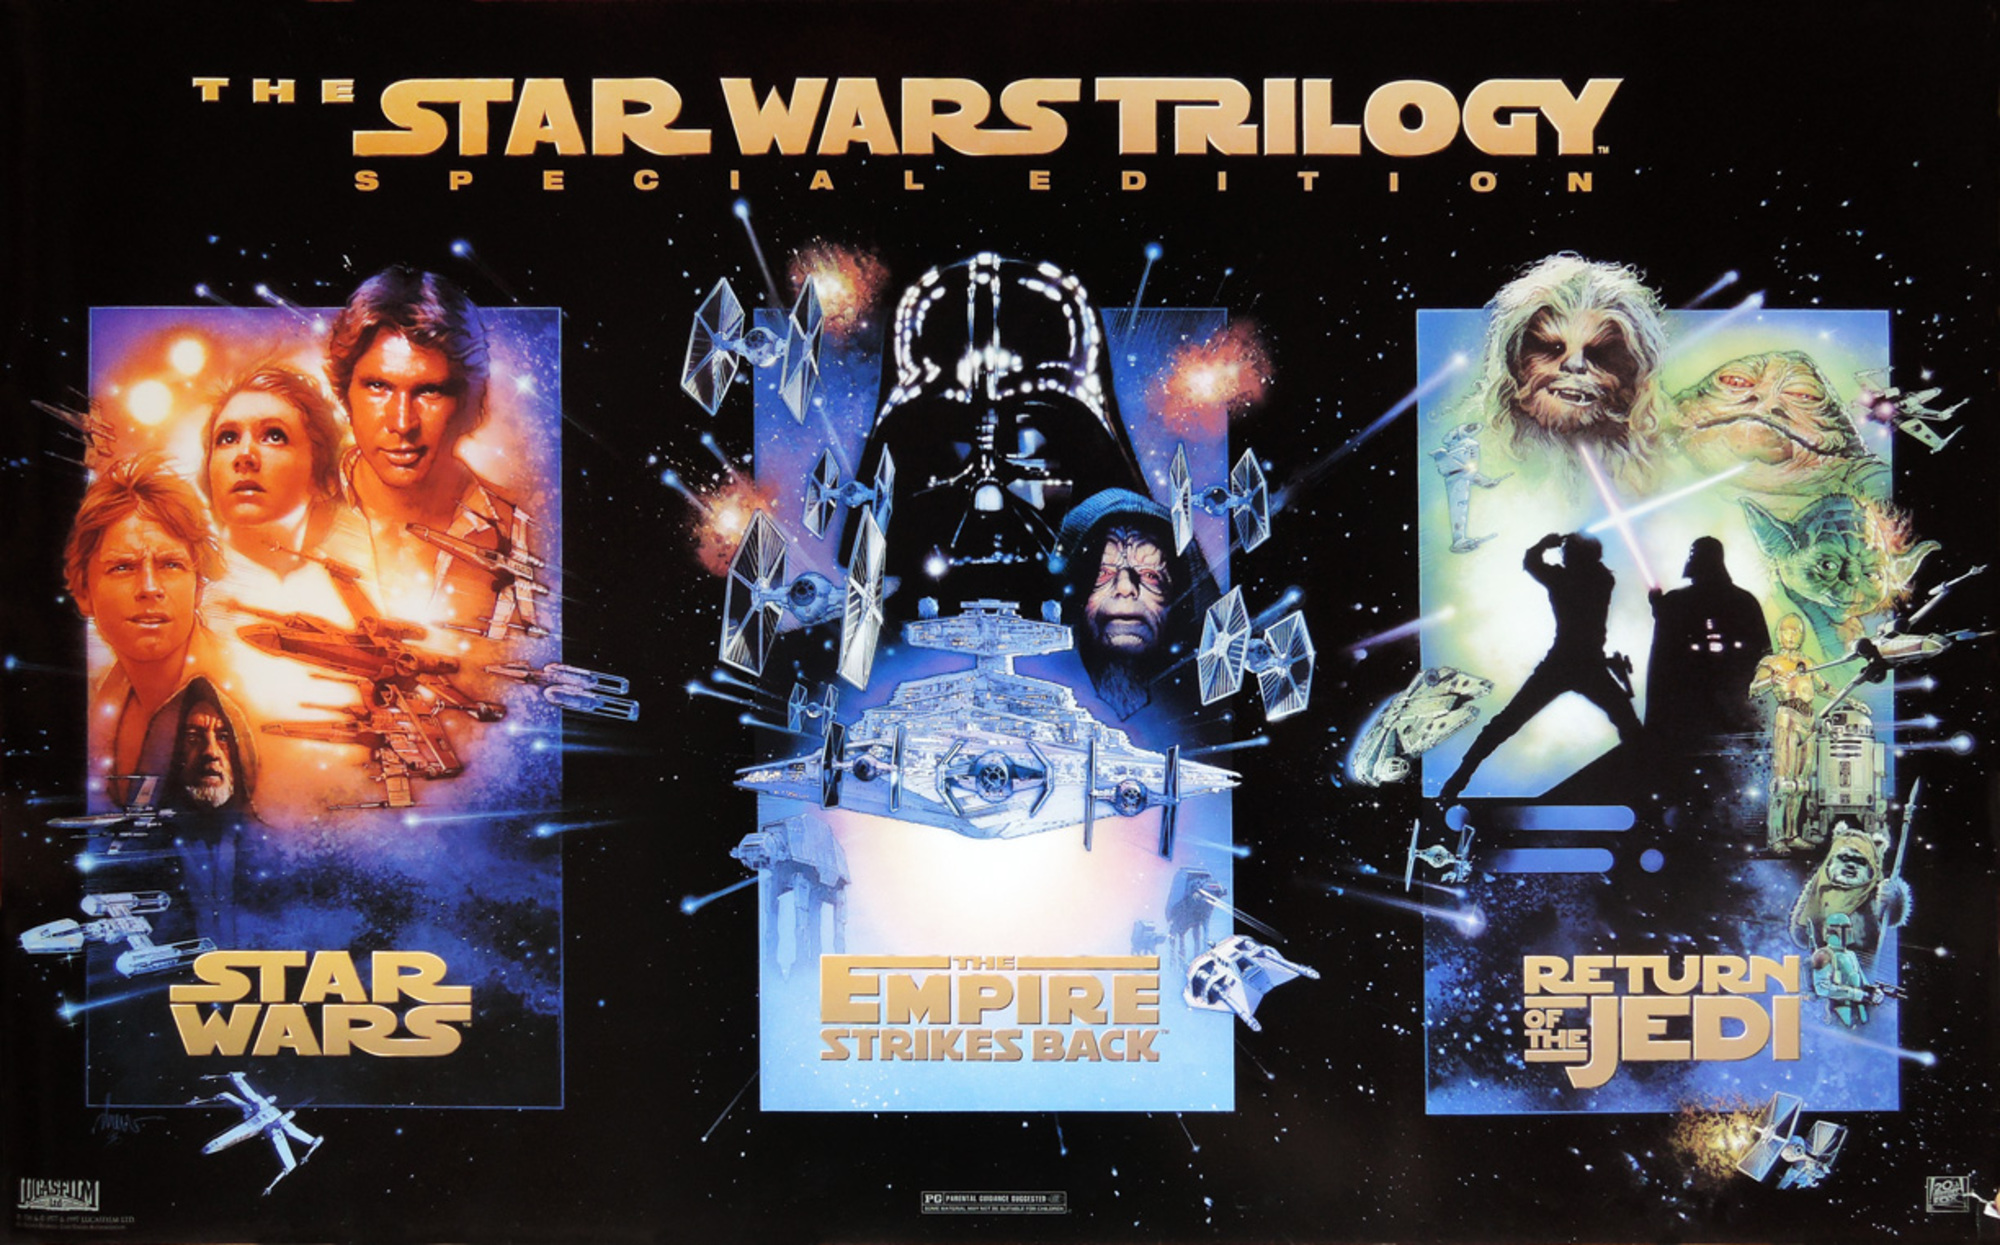 Back special. Star Wars Original Trilogy. Звездные войны 1997. Звёздные войны» Джорджа Лукаса 1977 Постер. Классическая трилогия Звёздных войн.